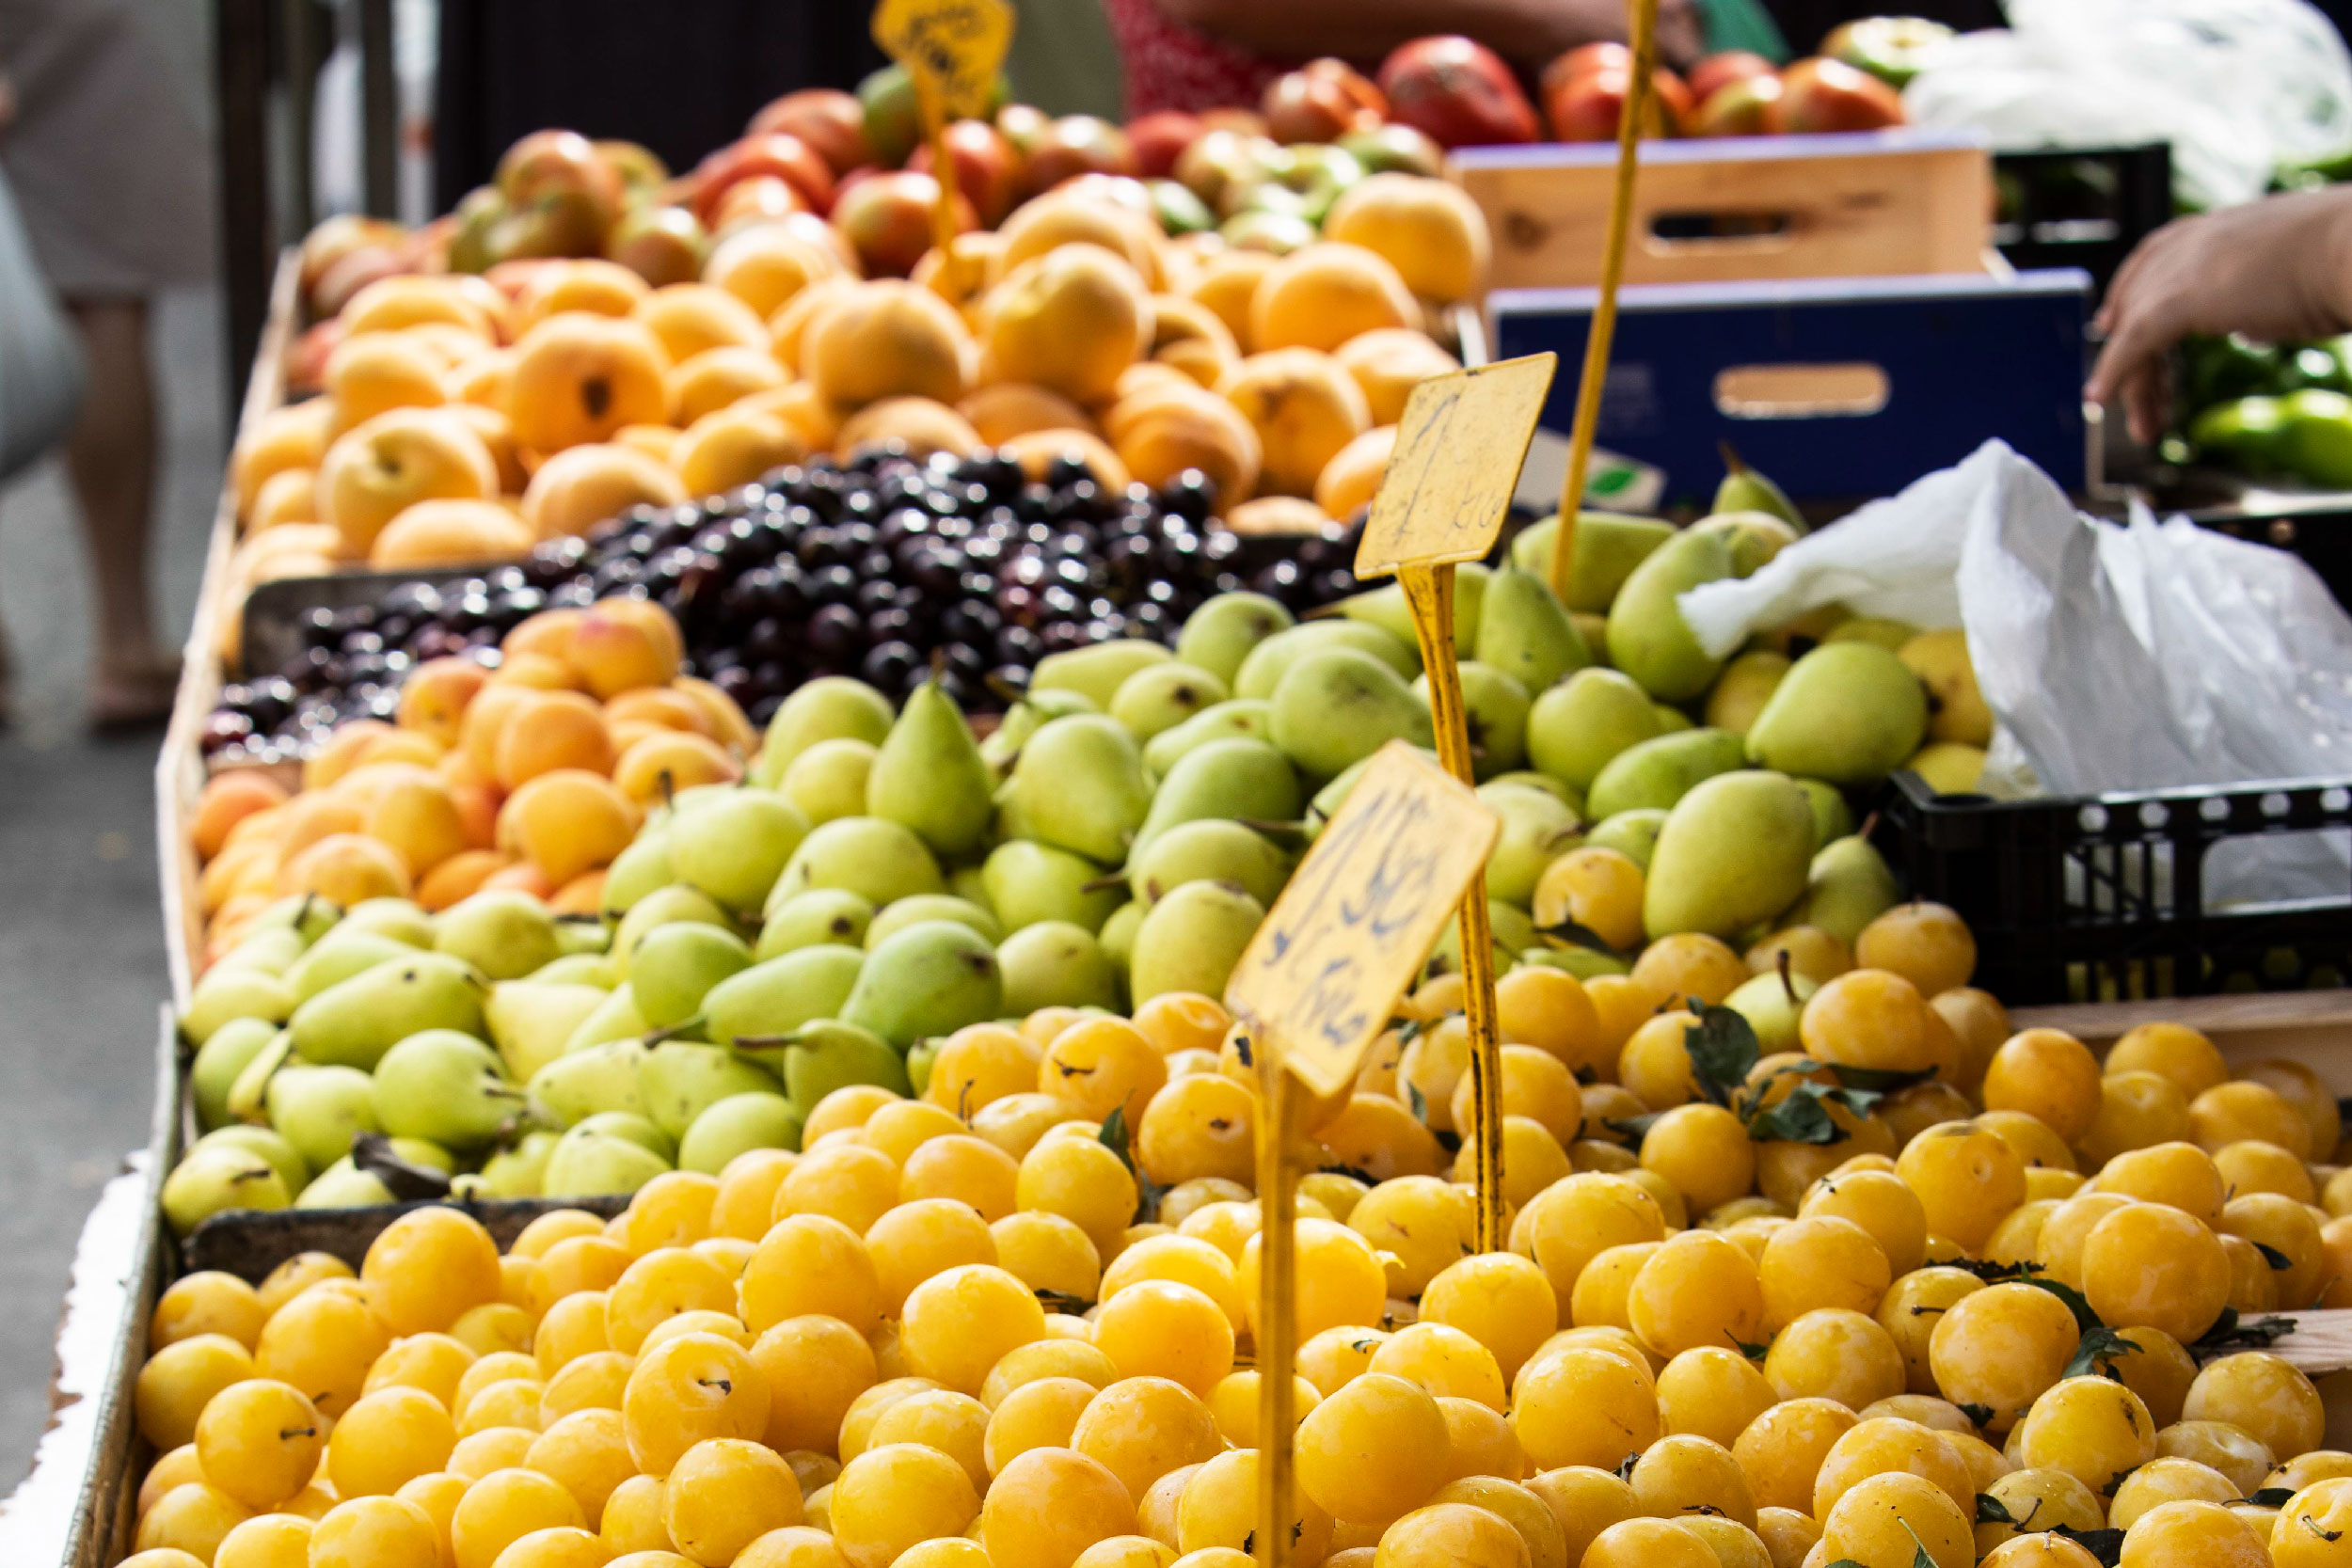 Fotografia de barraca de frutas com diversos produtos expostos para compra